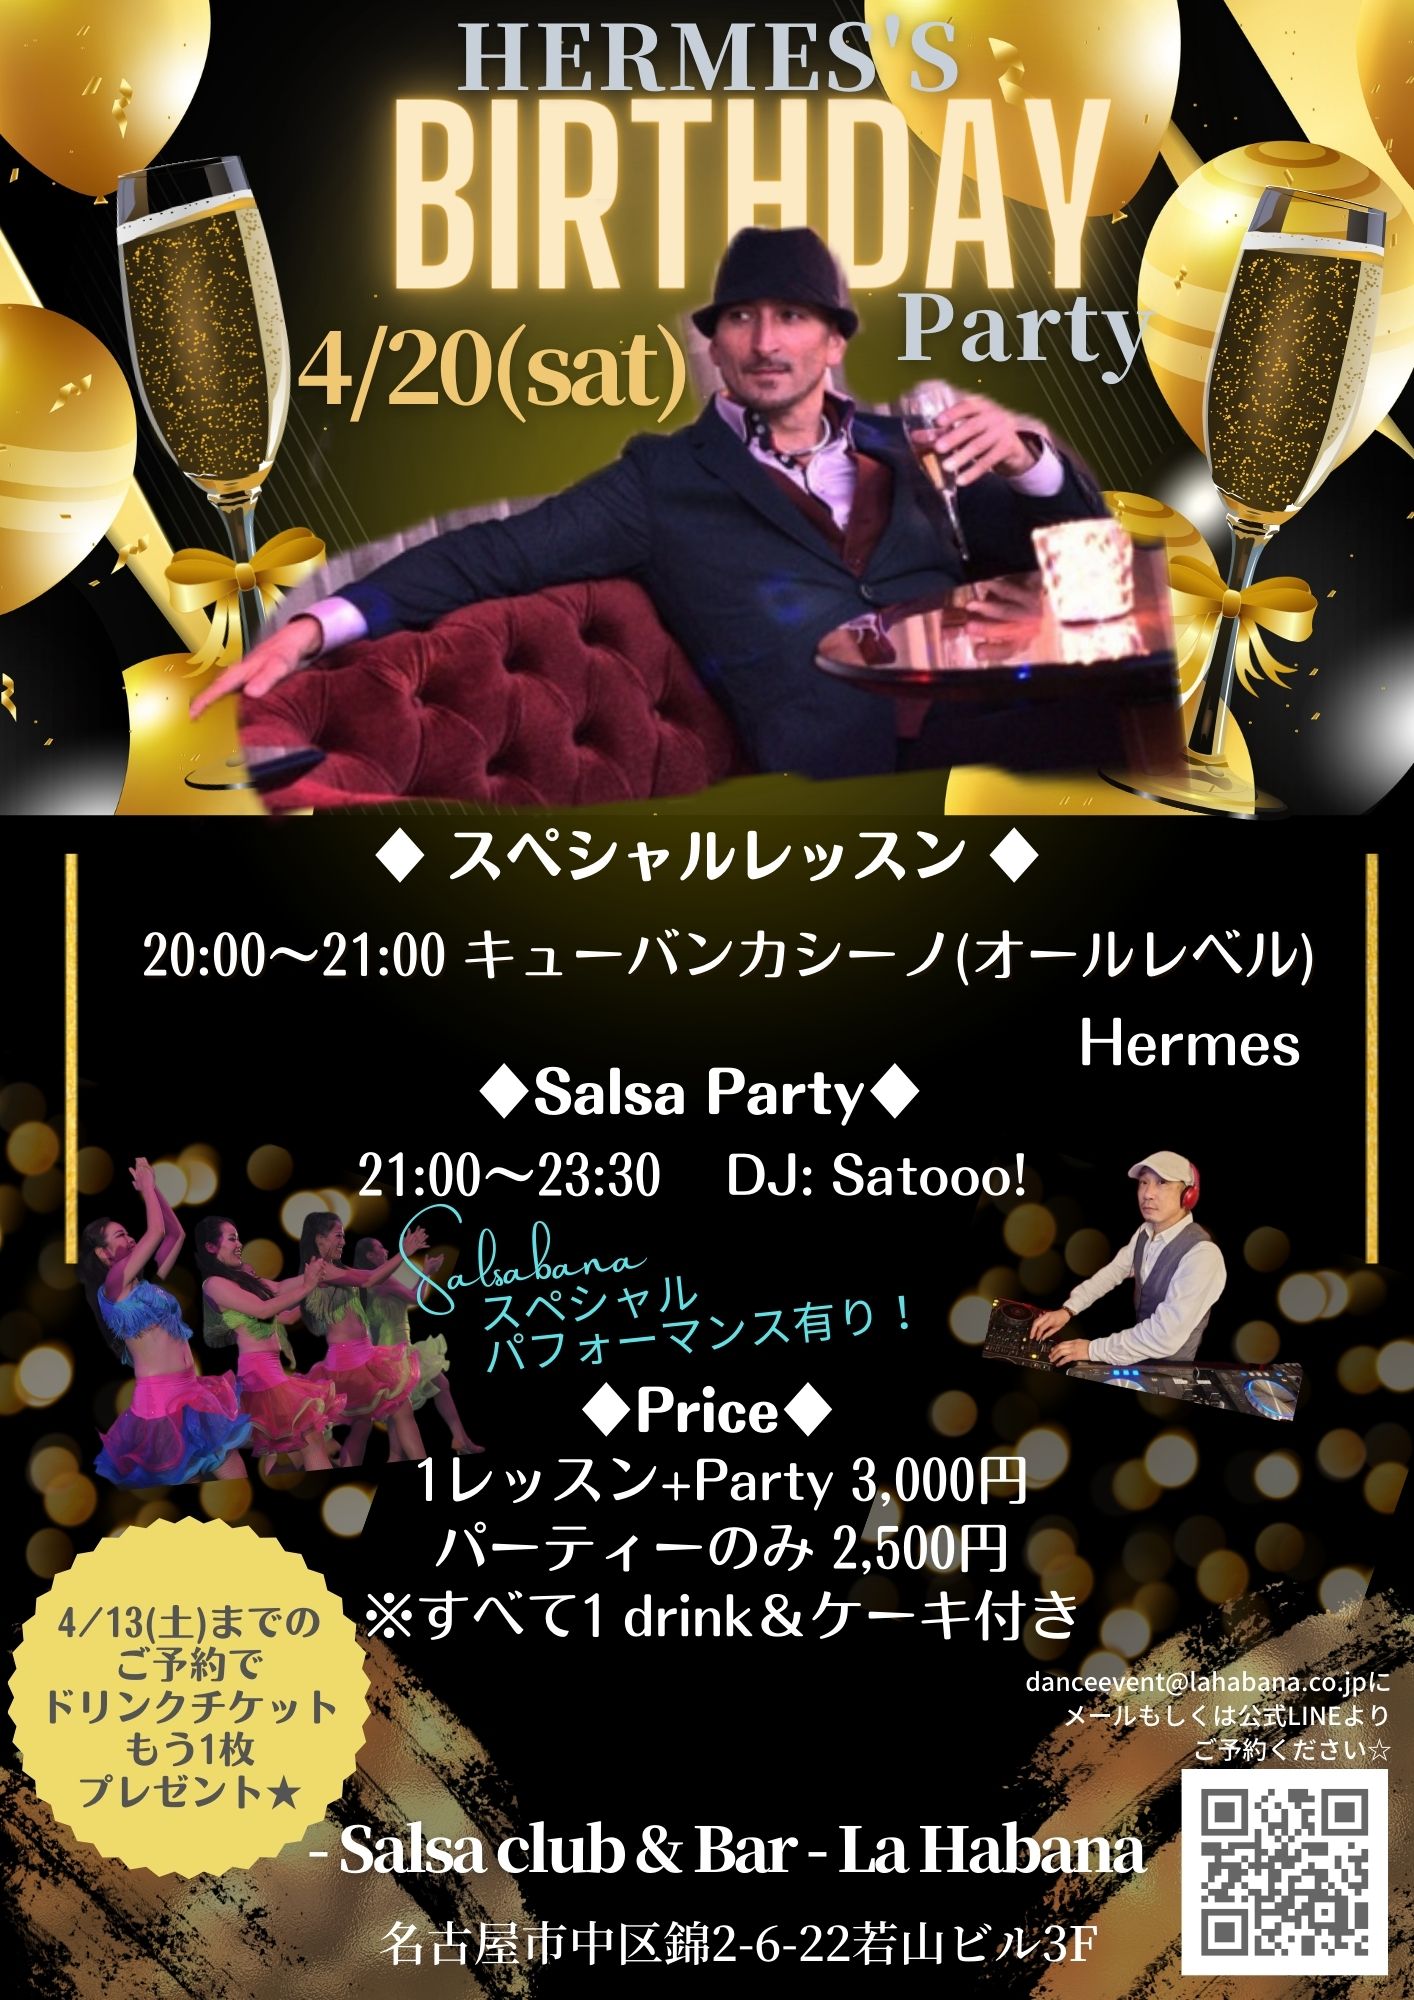 4月20日(土)Hermes’s Birthday Party!